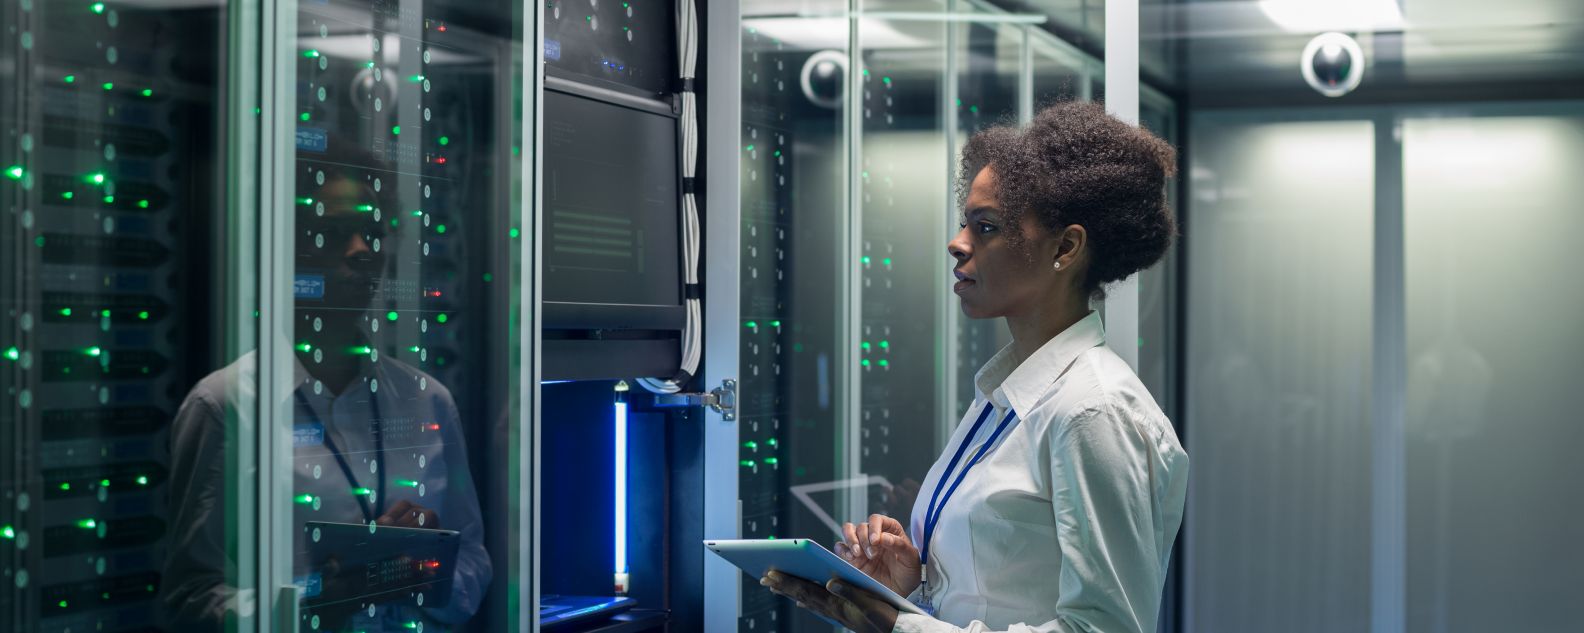 データセンターでタブレットを使って作業する女性の技術者の画像